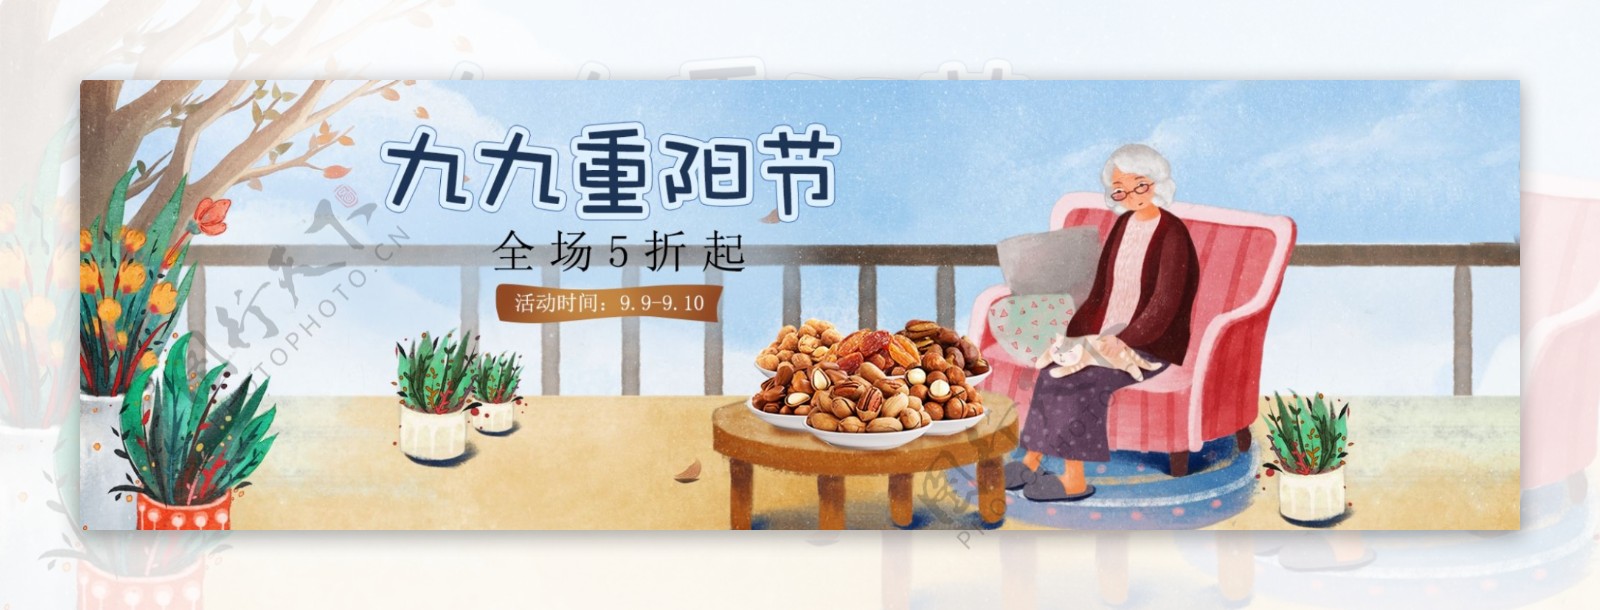 重阳节食品促销淘宝banner